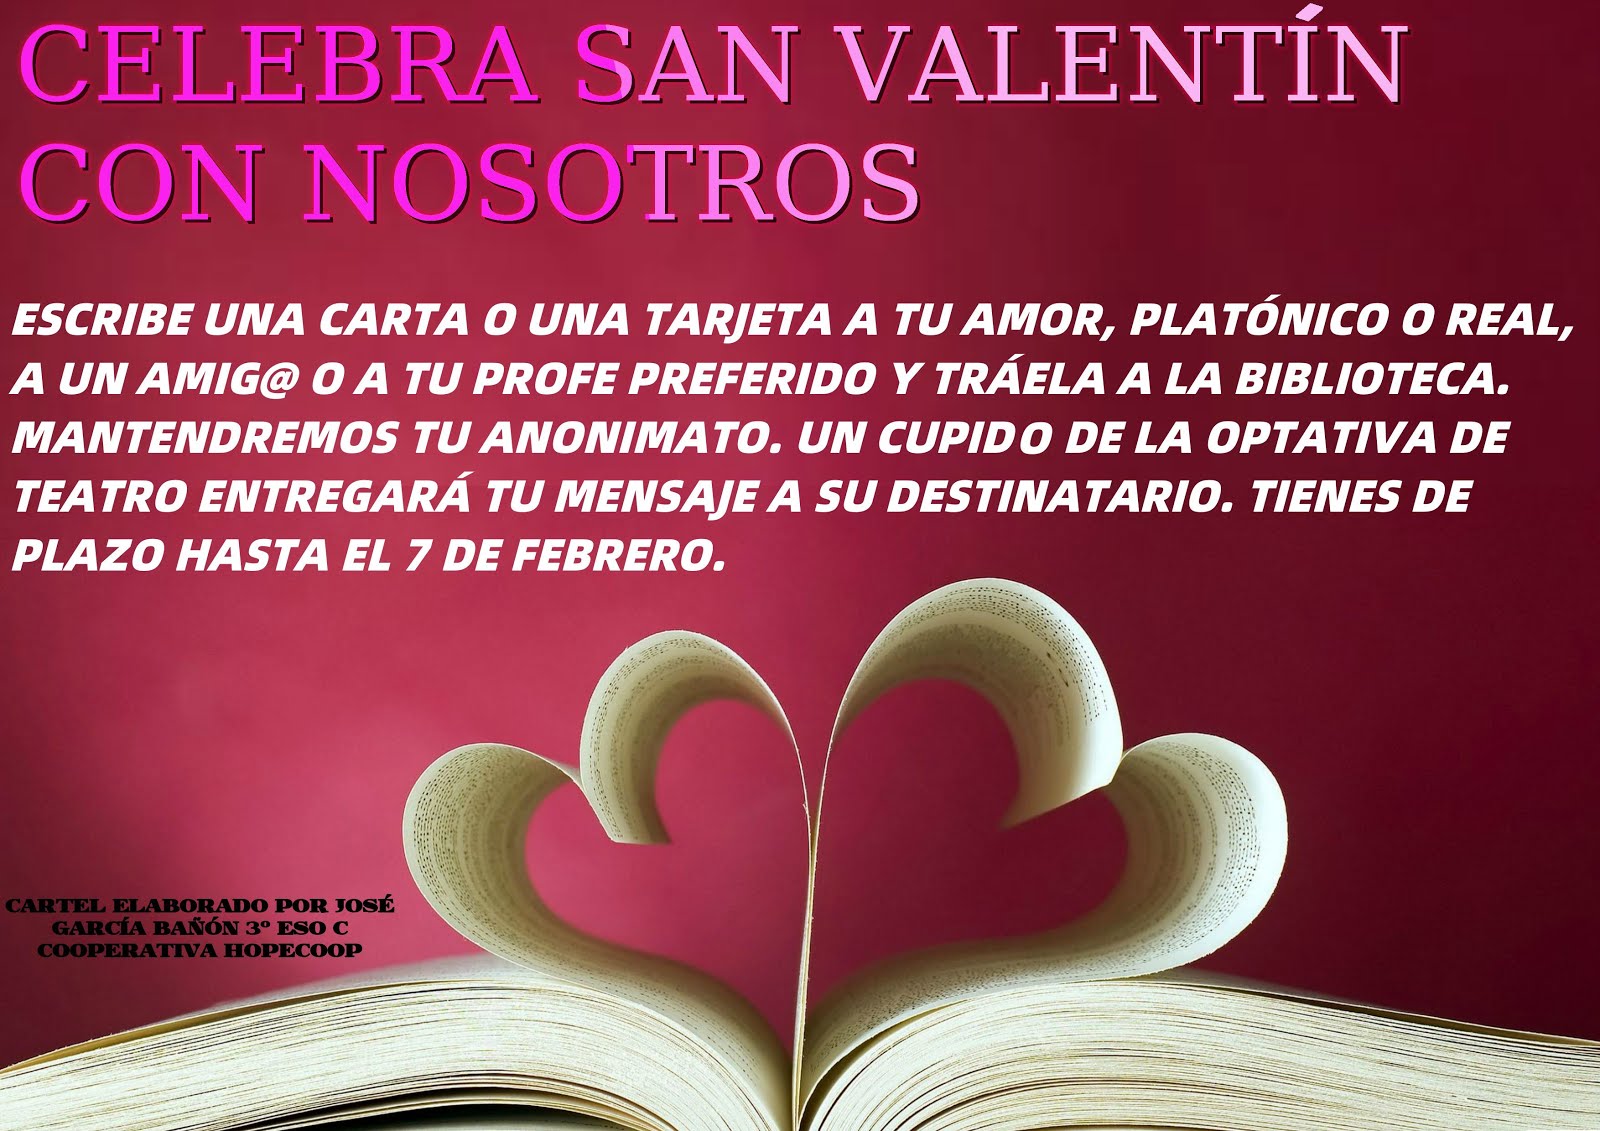 Celebramos San Valentín: del 10 al 13 de febrero